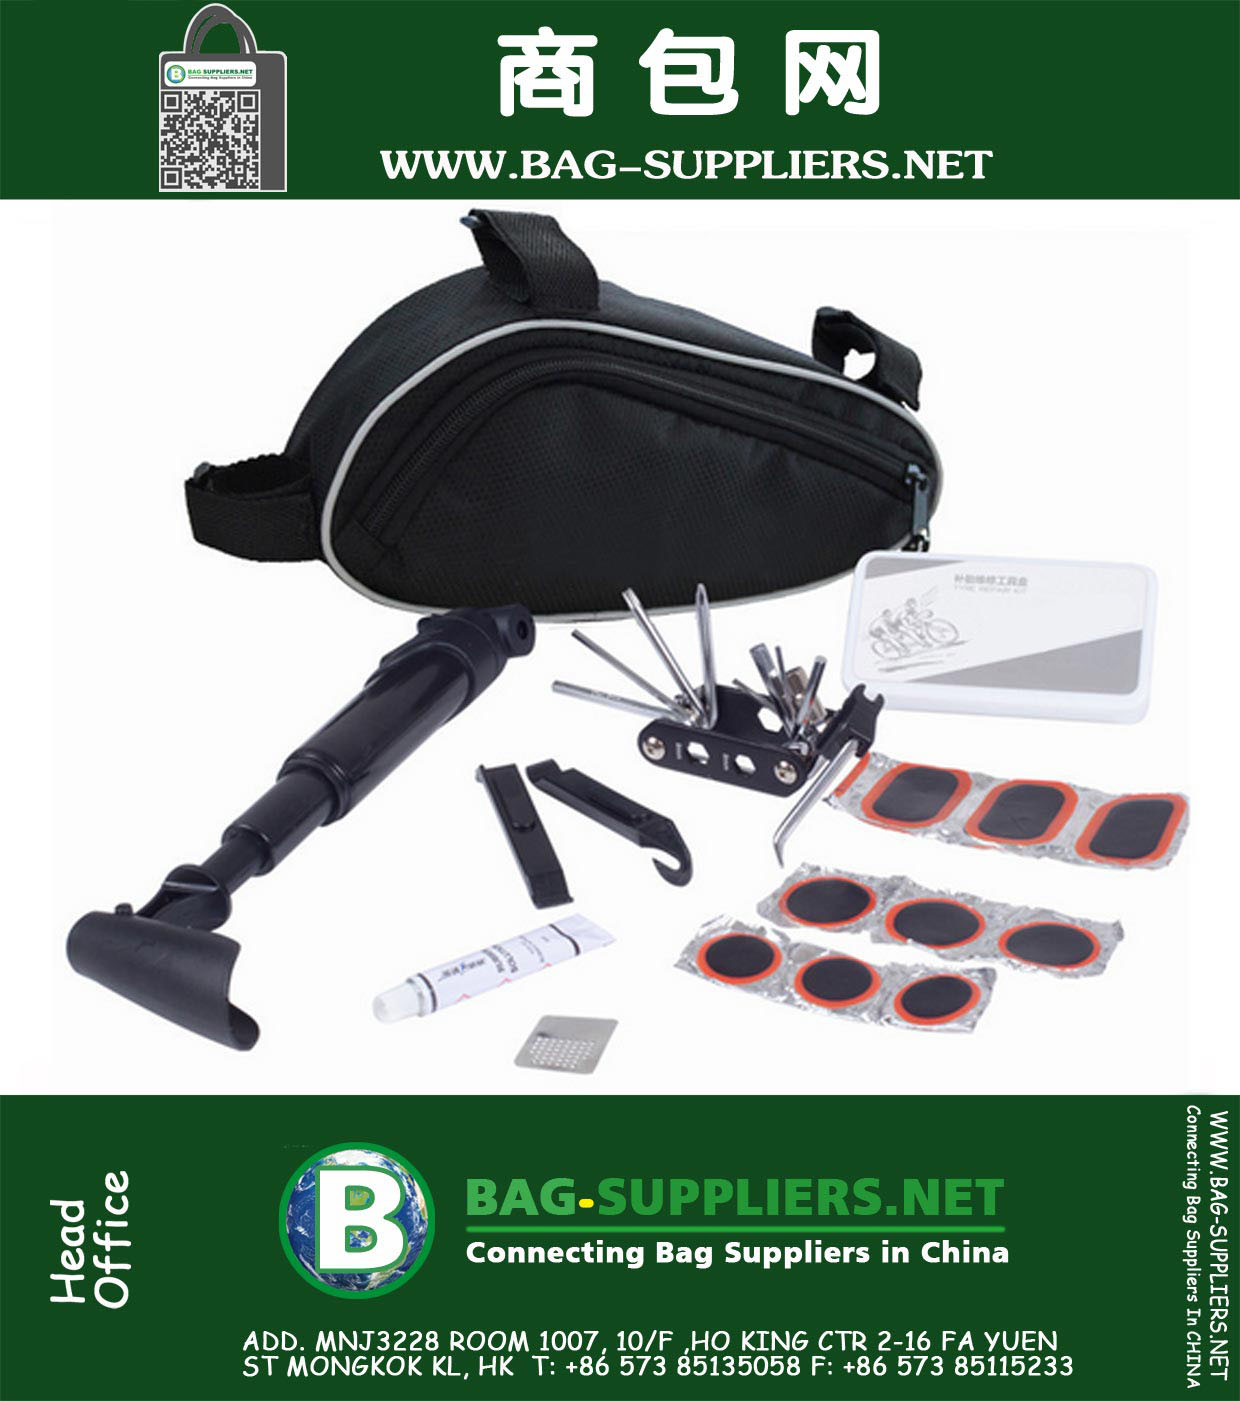 Ferramentas de bicicleta Kit Bag Com Mini Bomba 14 em 1 multi BMX BTT bicicleta de estrada ferramentas pneumáticas Ferramentas Repair Cadeia